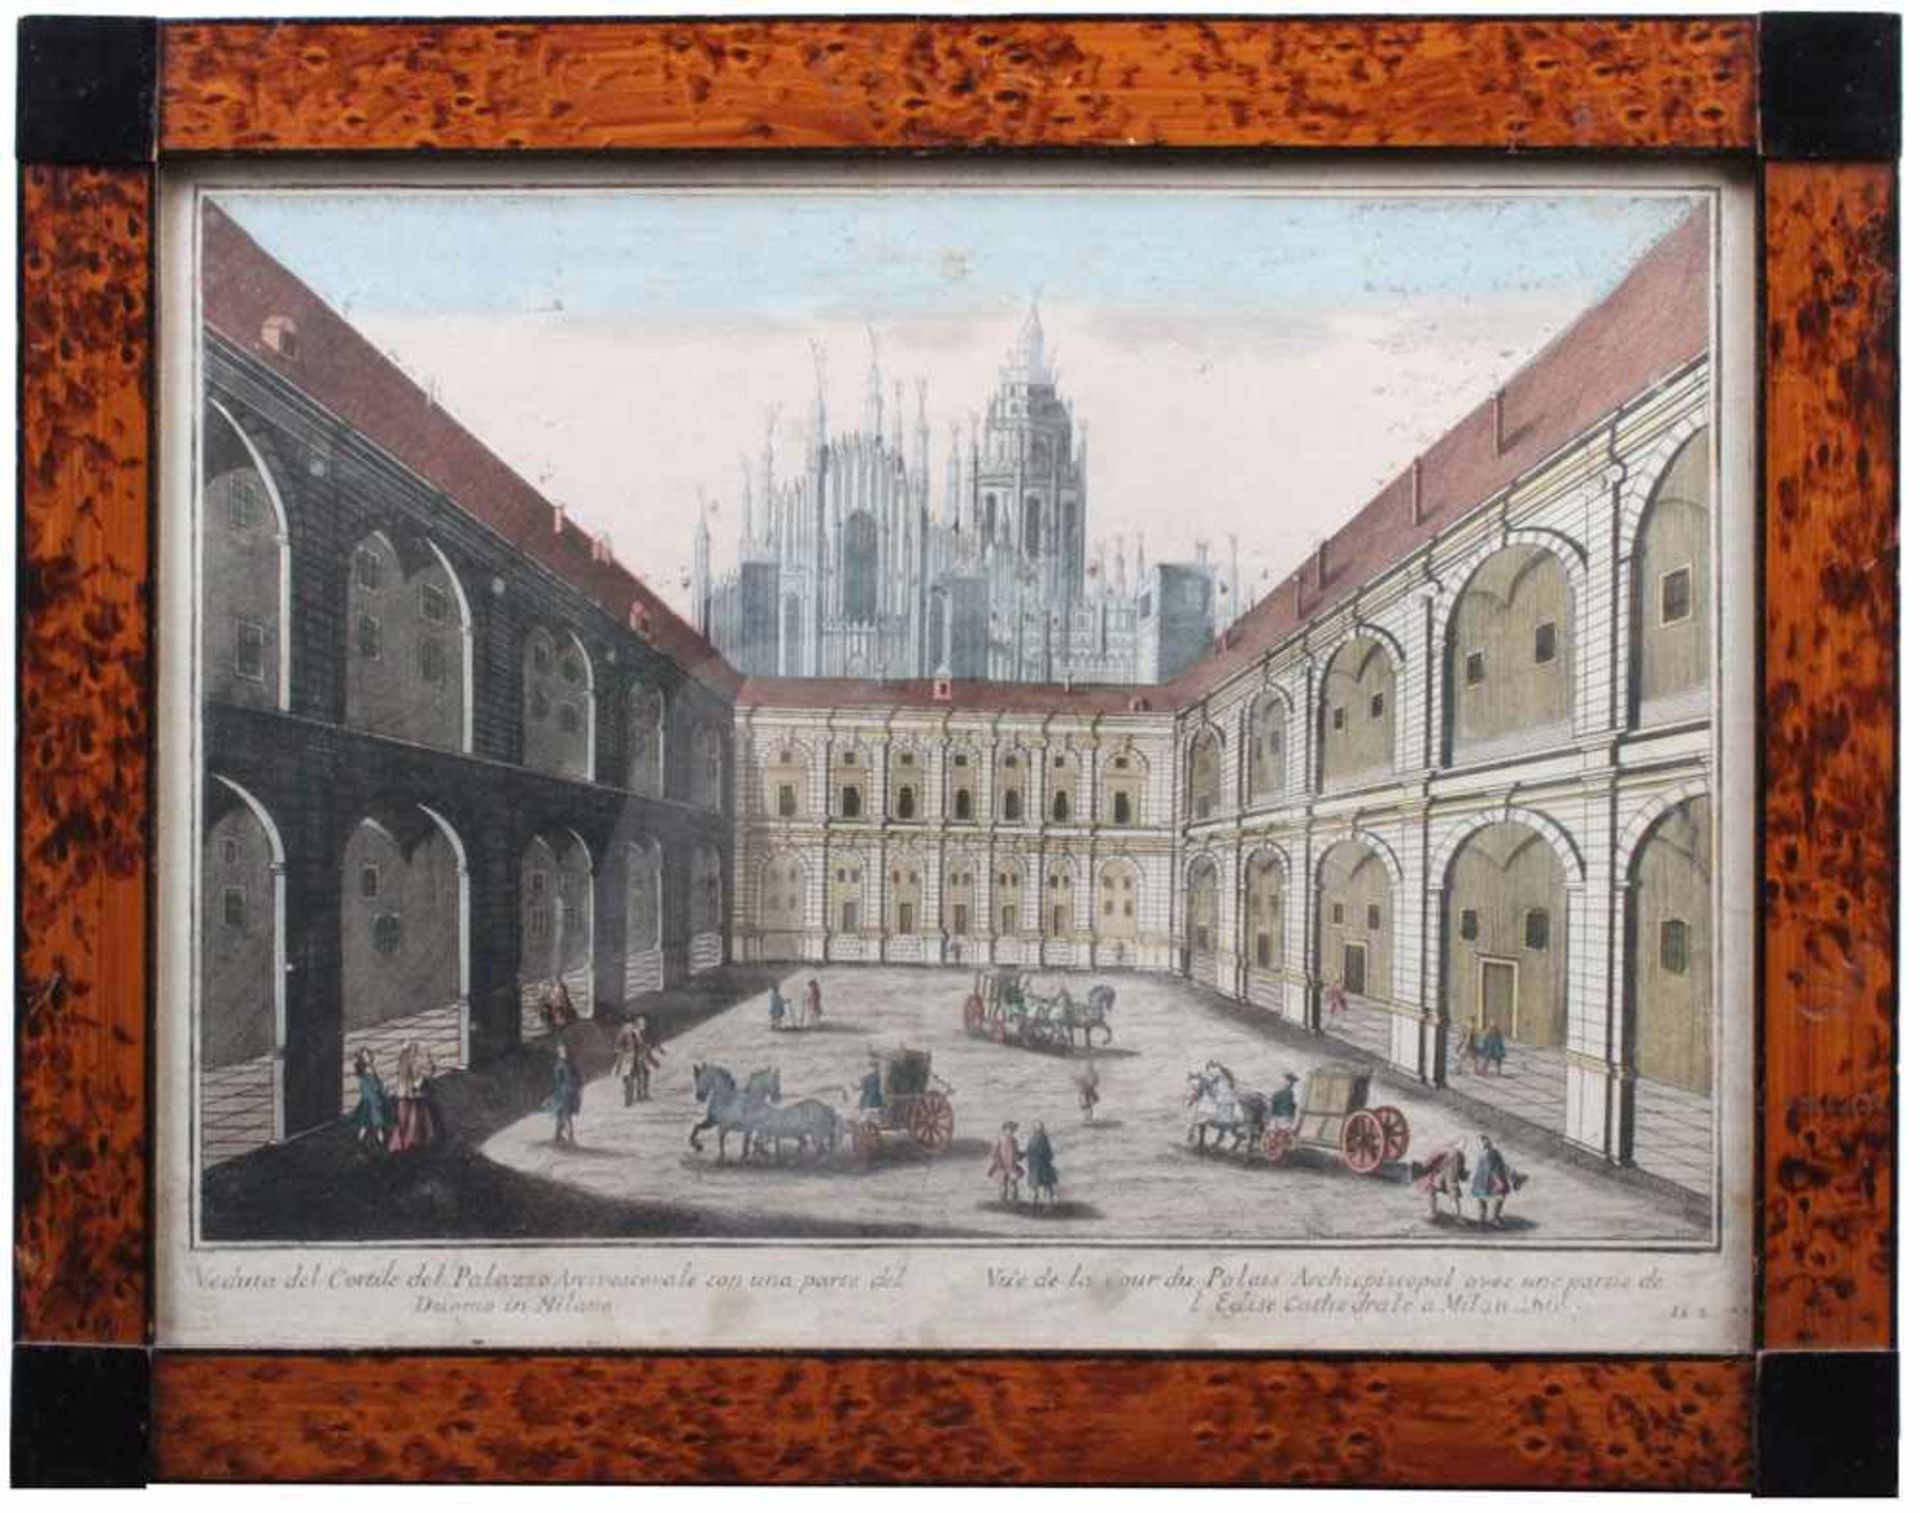 Kupferstich, 17./18. Jh."Veduta del Cordile del Palazzo Archivescovale con una Parte del Duomo in